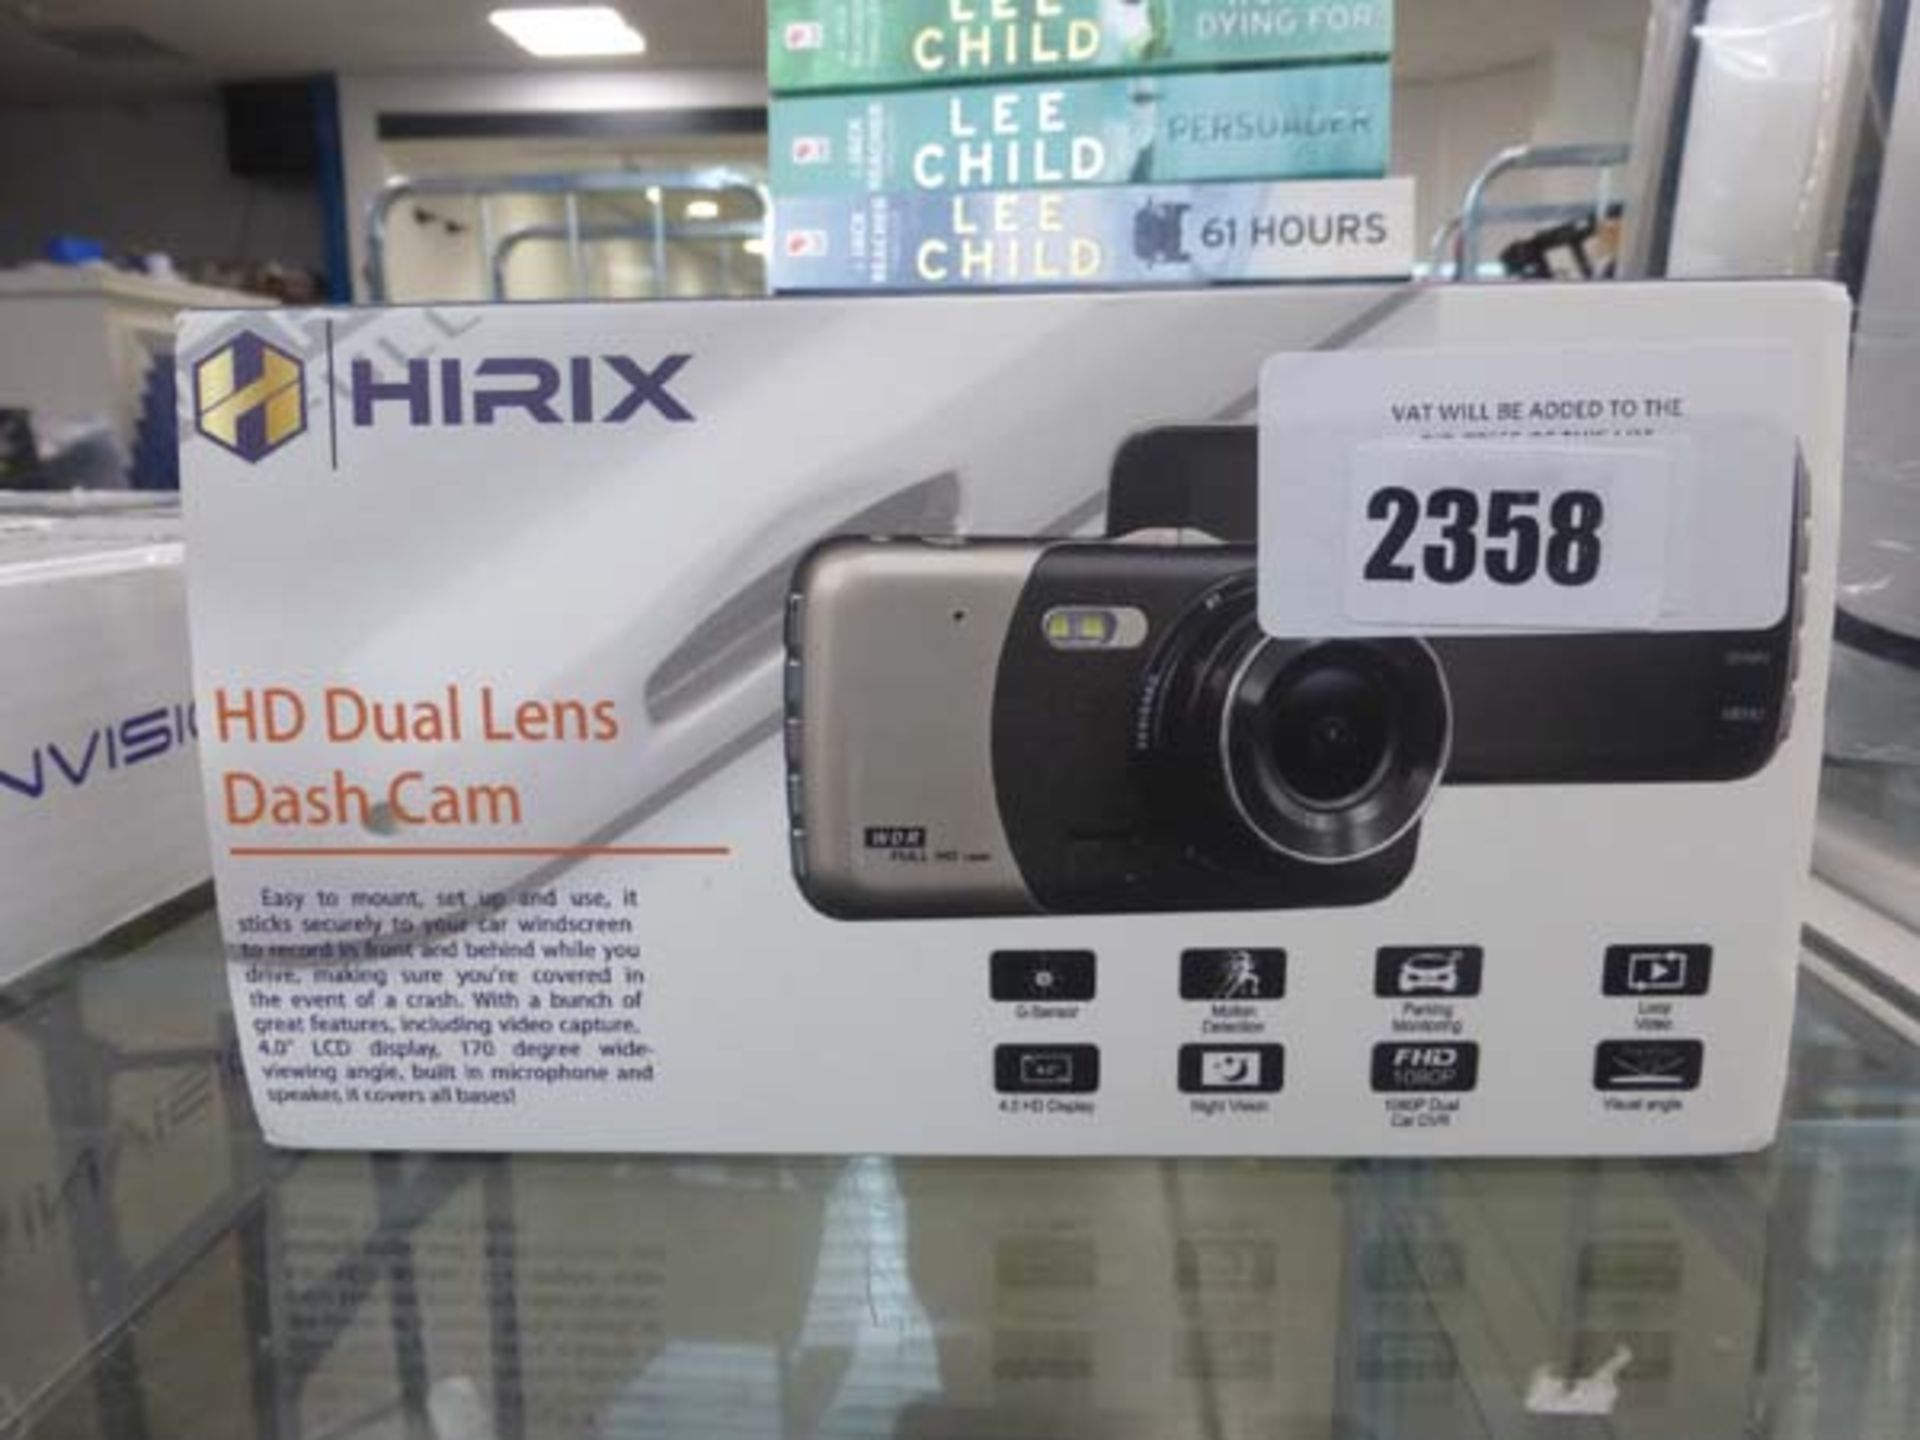 2231 HIRRX HD dual lens dashcam kit in box - Image 4 of 4